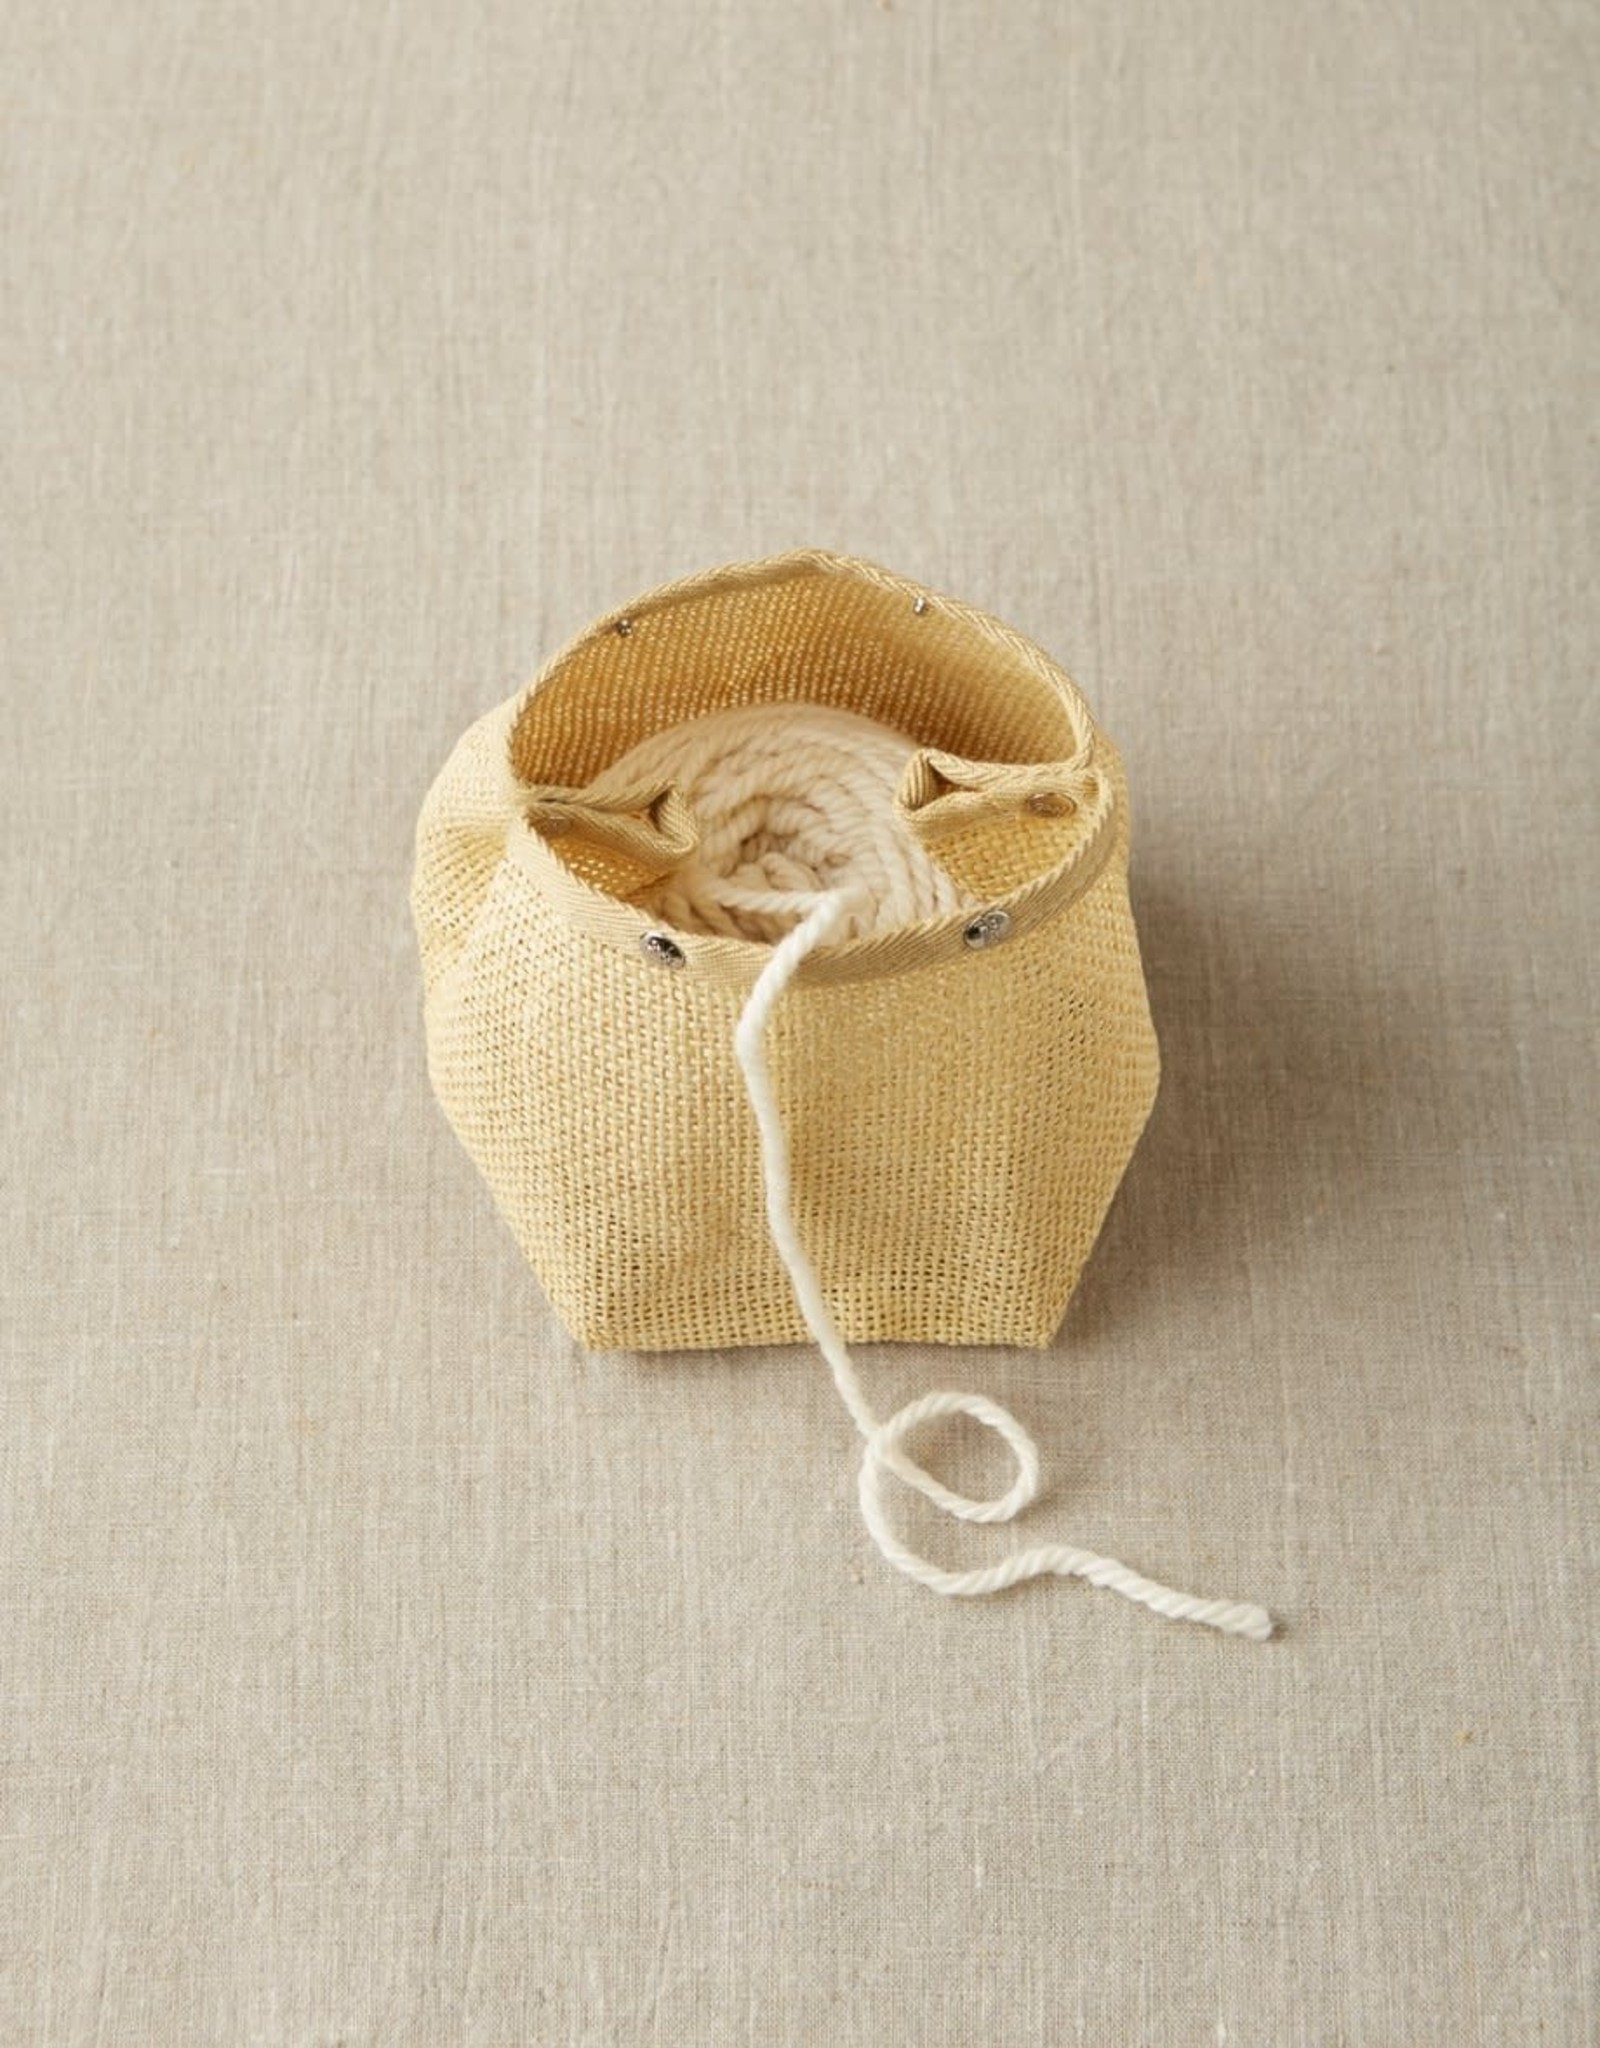 Cocoknits Natural Mesh Yarn Bag